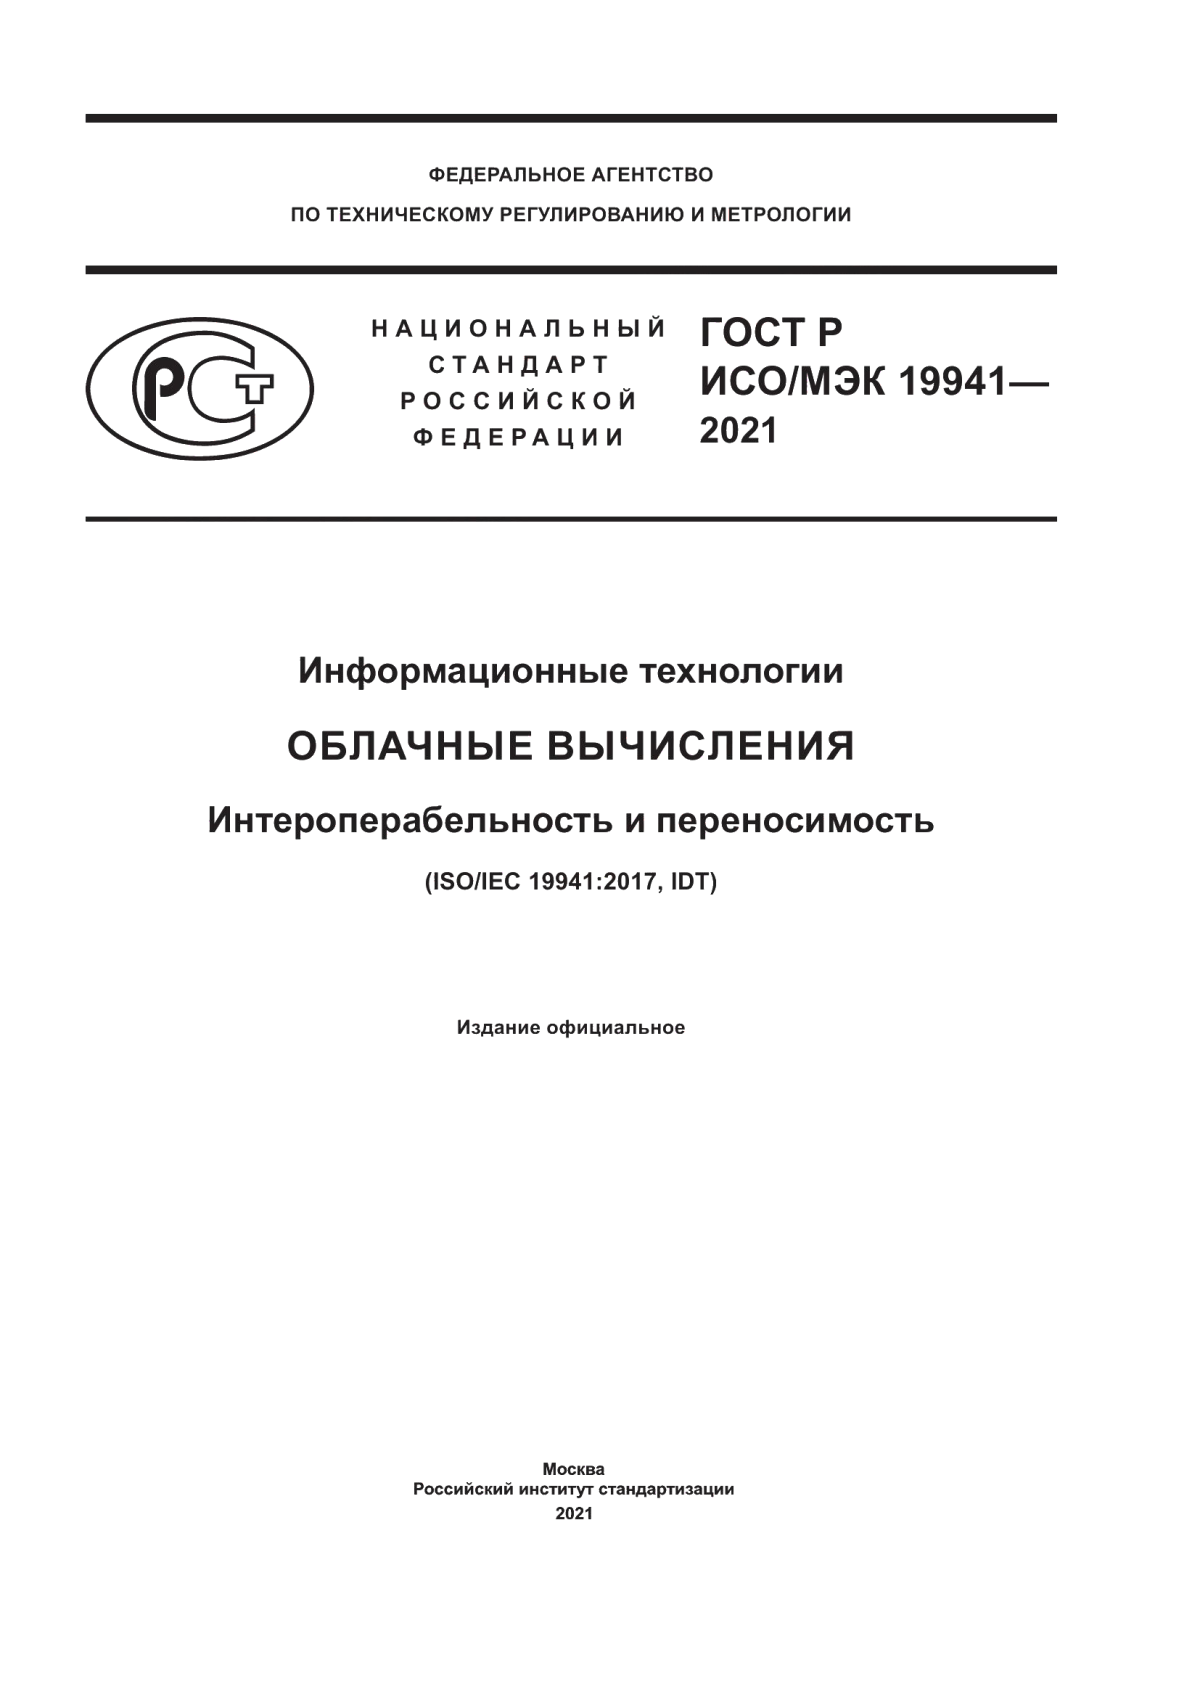 ГОСТ Р ИСО/МЭК 19941-2021 Информационные технологии. Облачные вычисления. Интероперабельность и переносимость